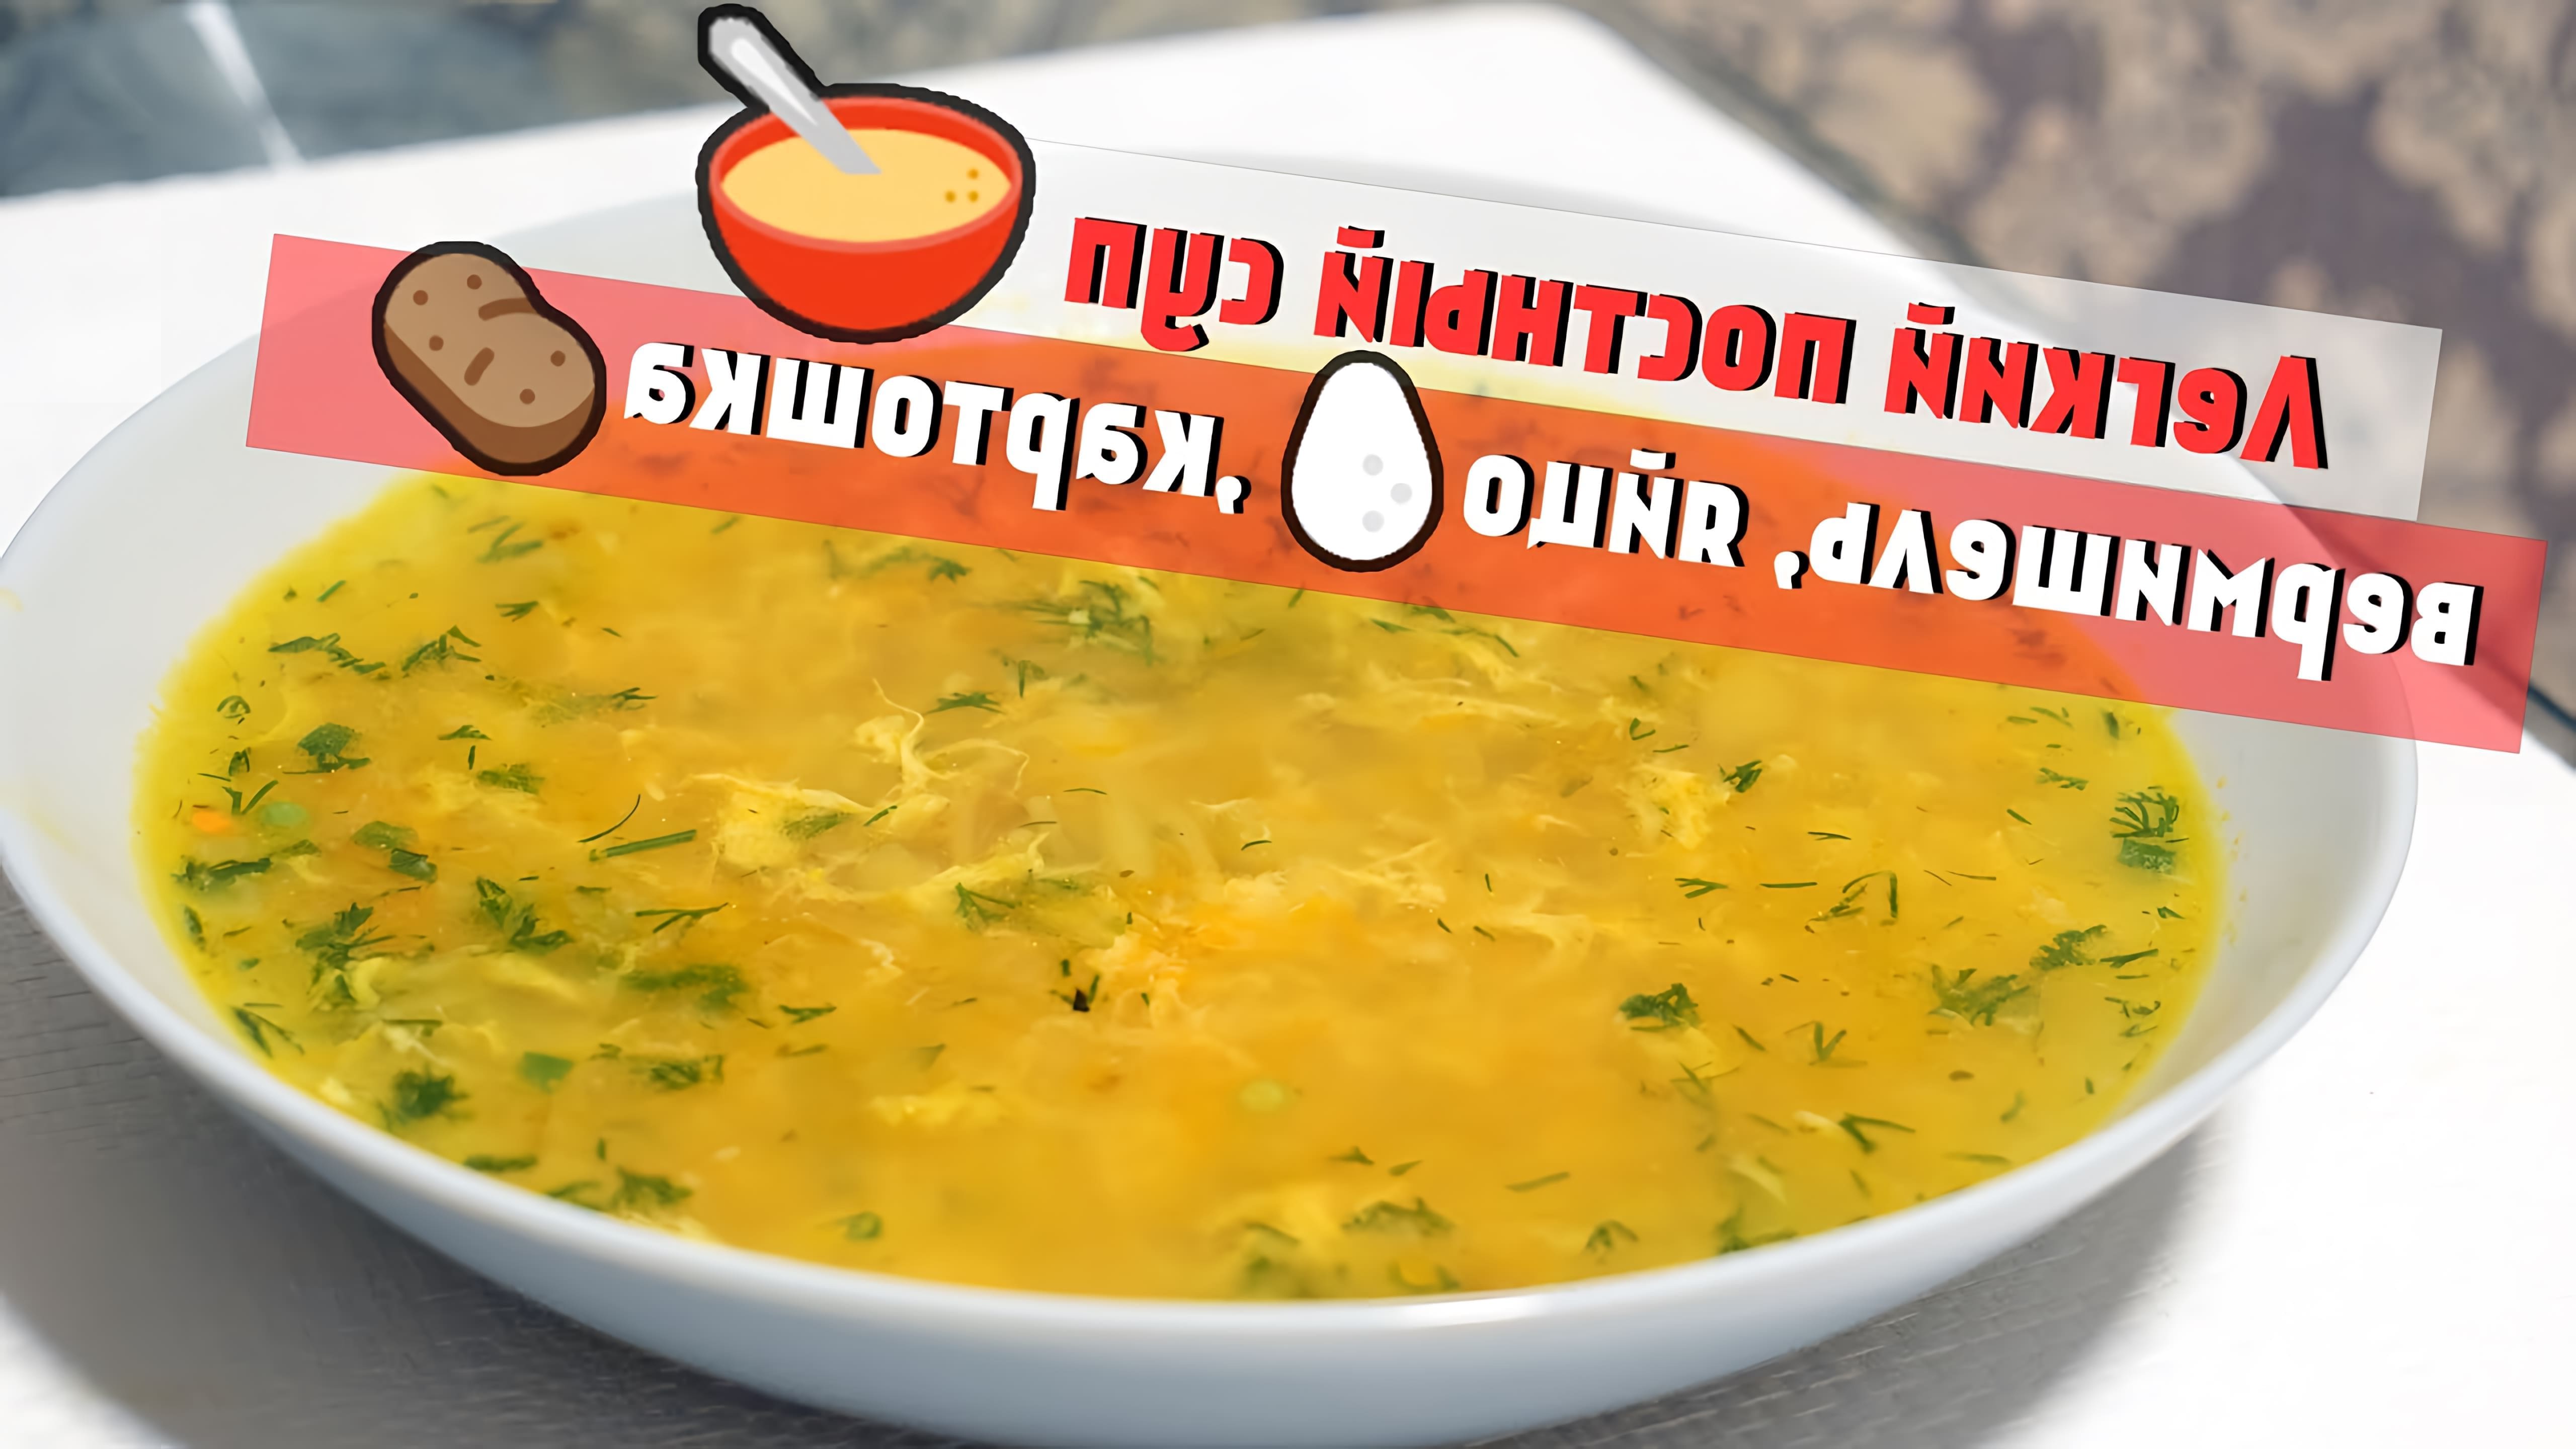 В этом видео демонстрируется простой рецепт супа с яйцом, вермишелью и картошкой